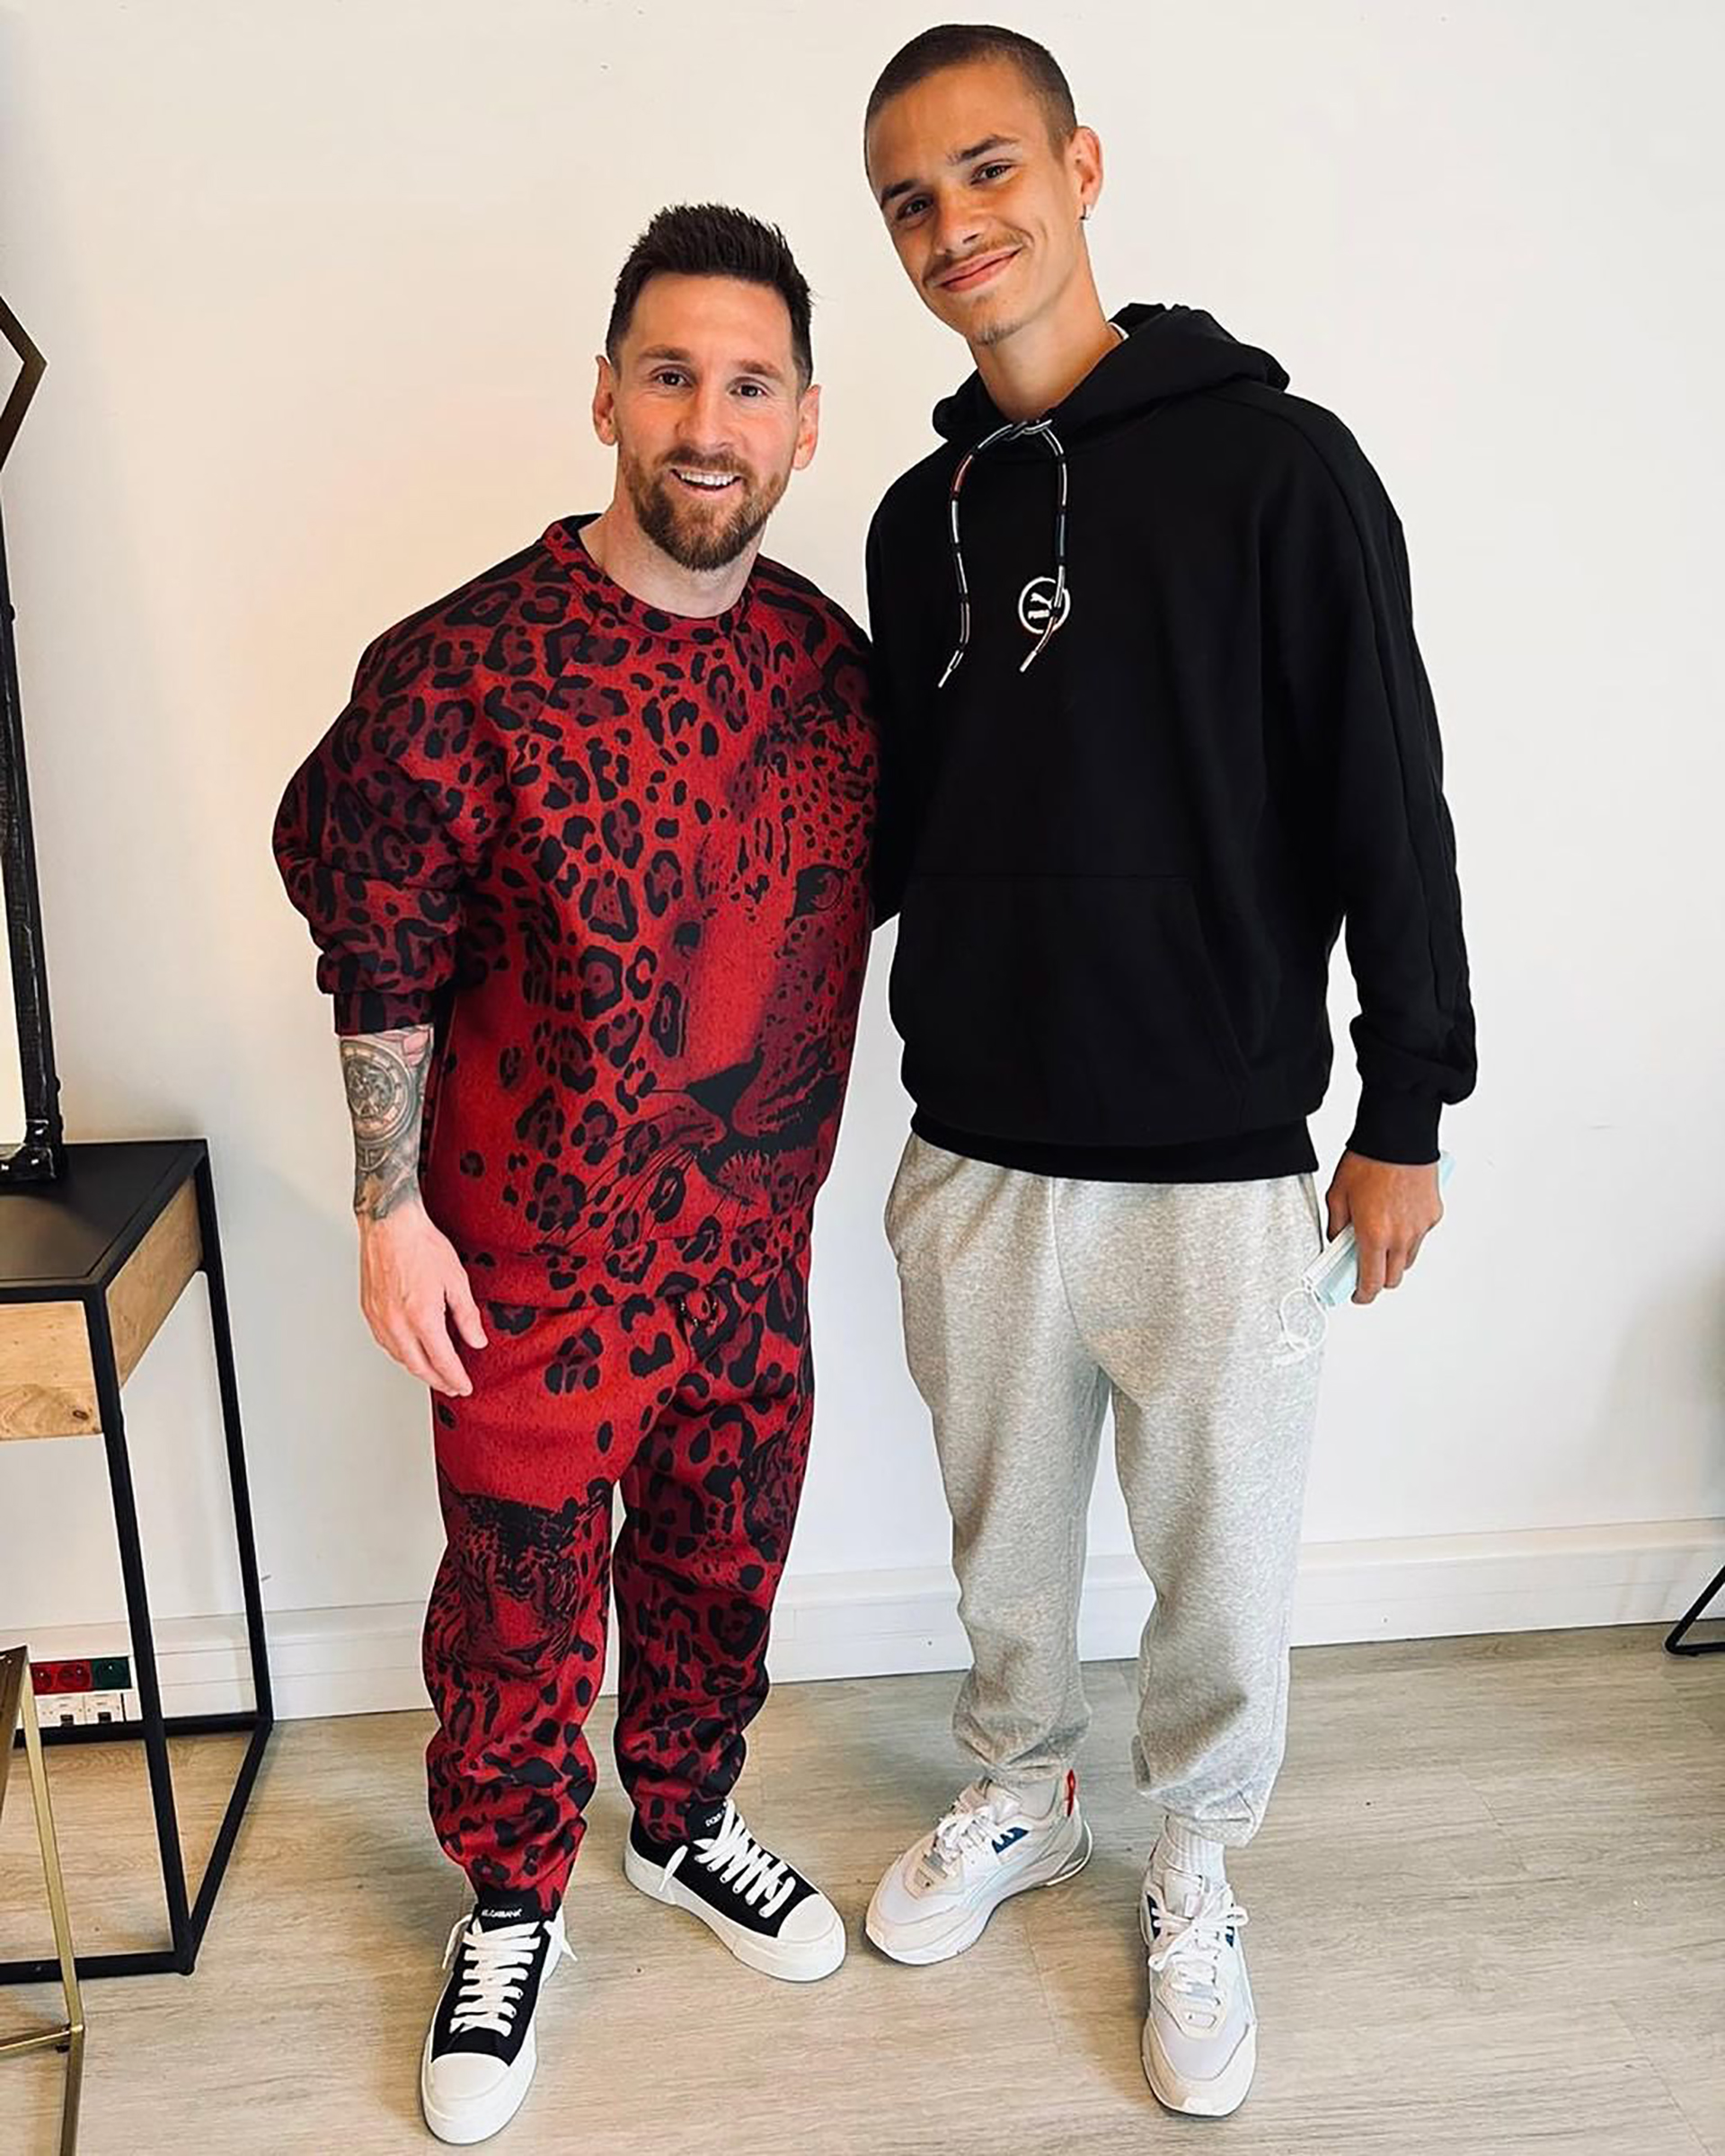 El excéntrico look de Lionel Messi en su encuentro con el de David Beckham que generó una catarata de memes y bromas en las redes - Infobae